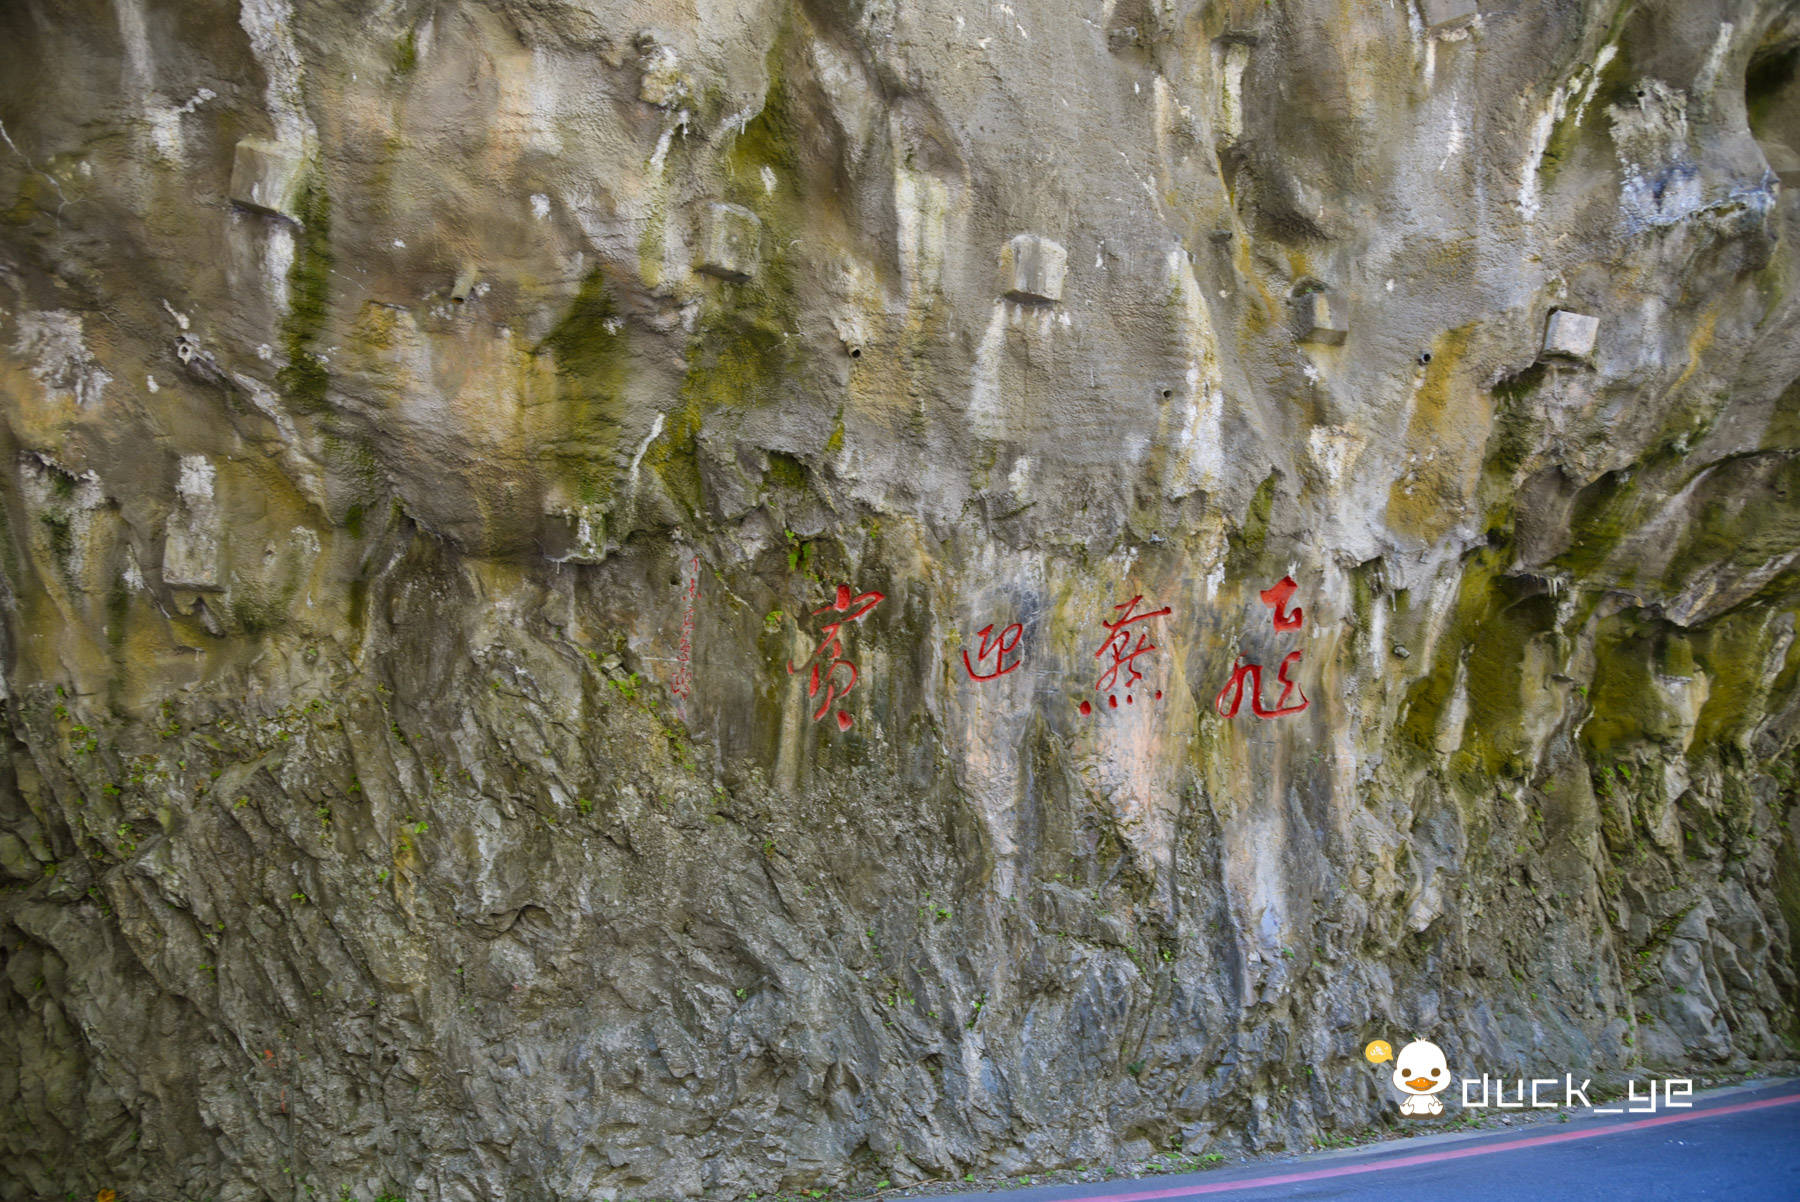 燕子口步行道：一面是悬崖上遍布洞穴，另一面是峡谷深峻滔滔流经